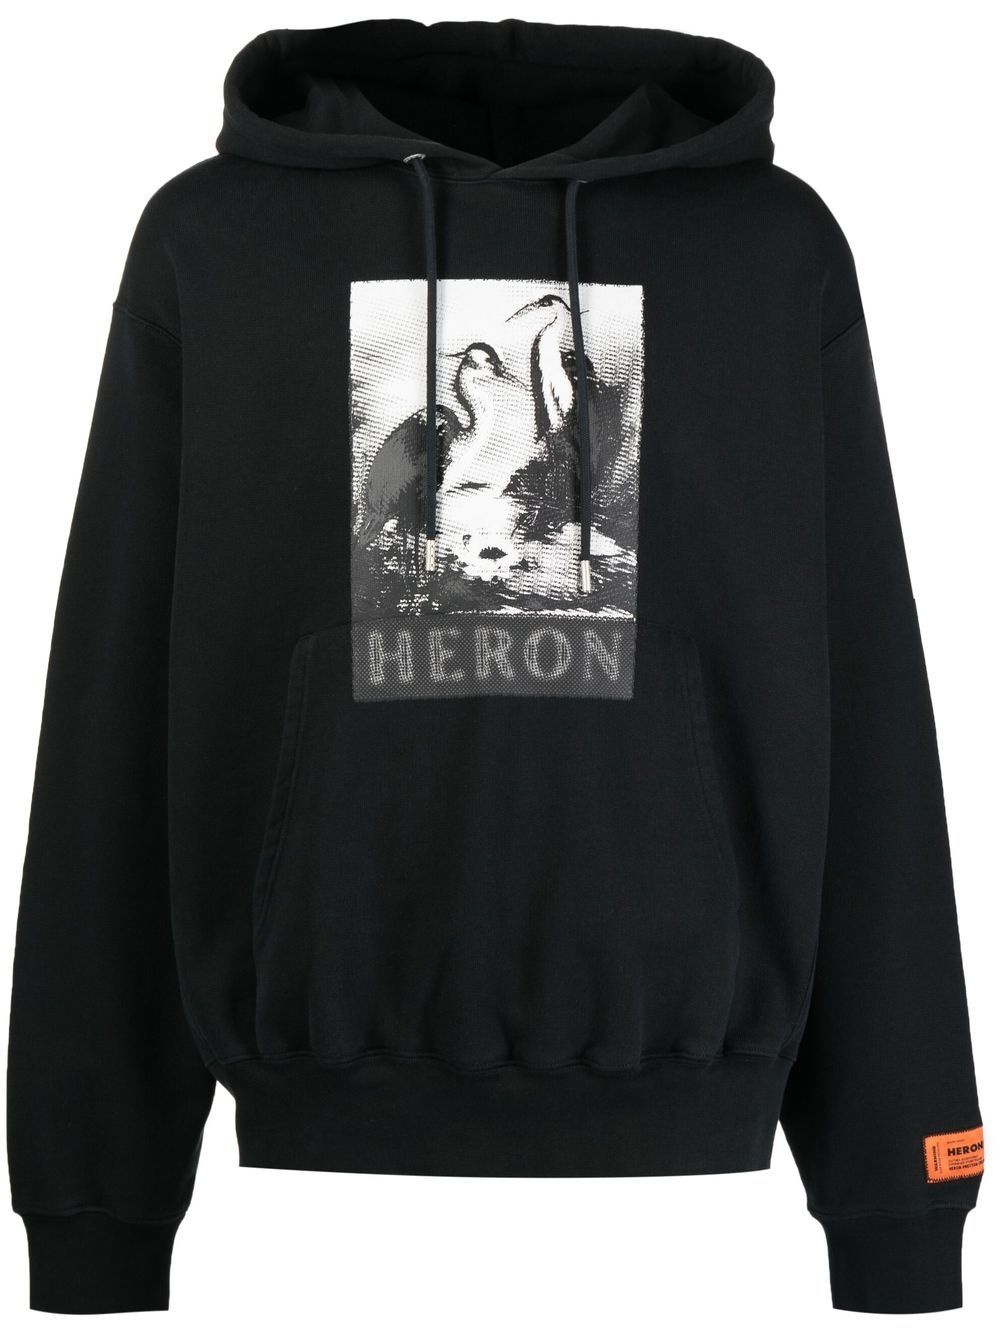 Halftone Heron print hoodie - 1